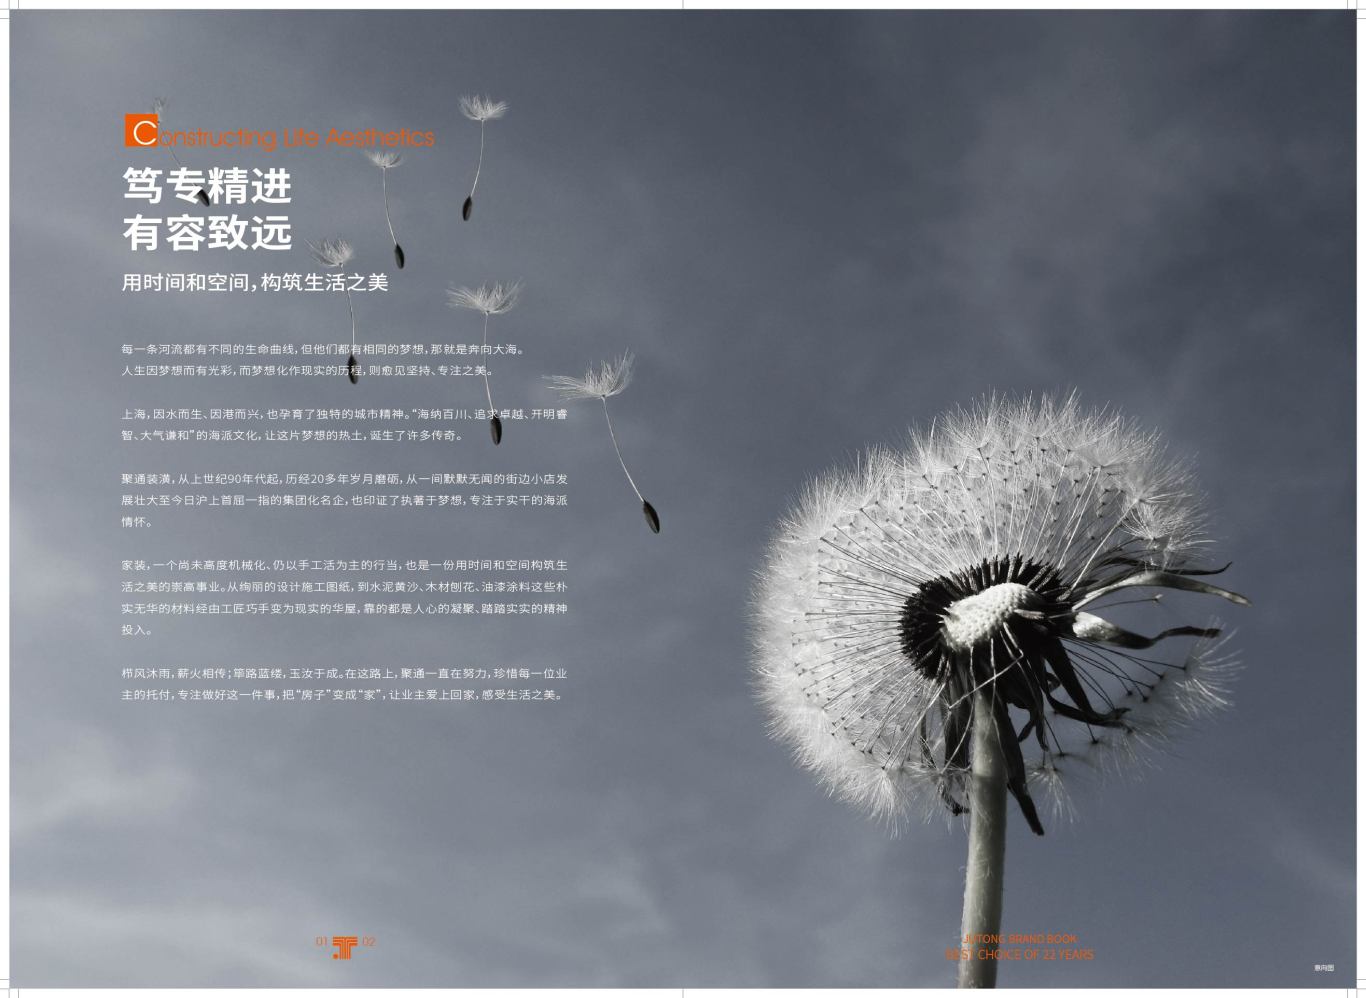 上海聚通装饰集团宣传手册设计图0